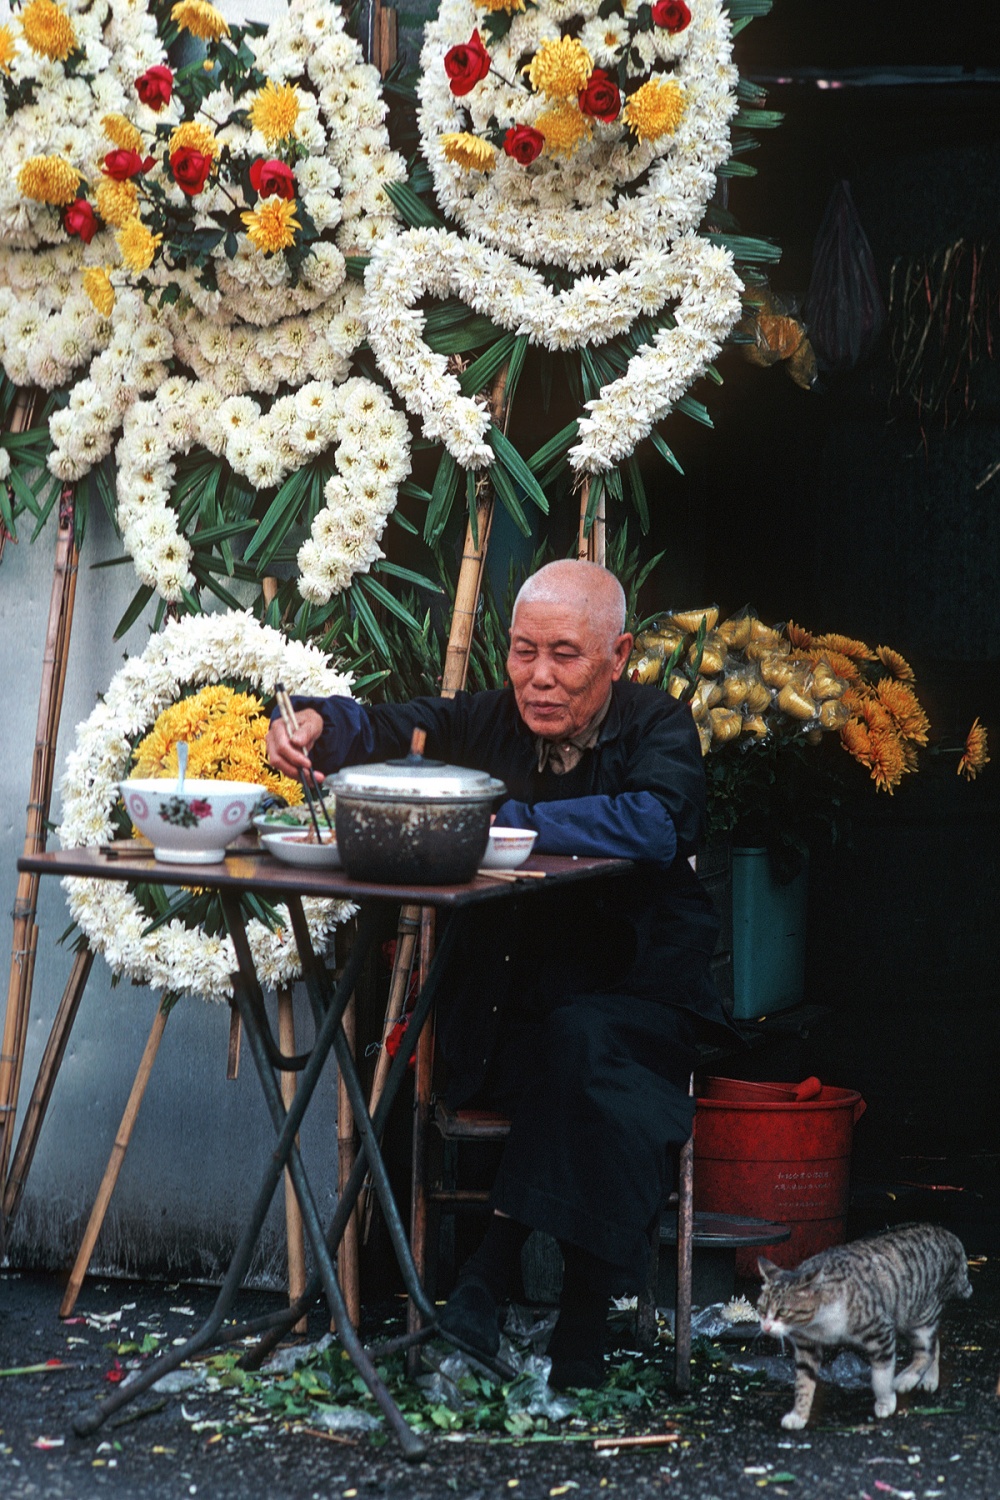 bill-hocker-funeral-flowers-wan-chai-hong-kong-1979